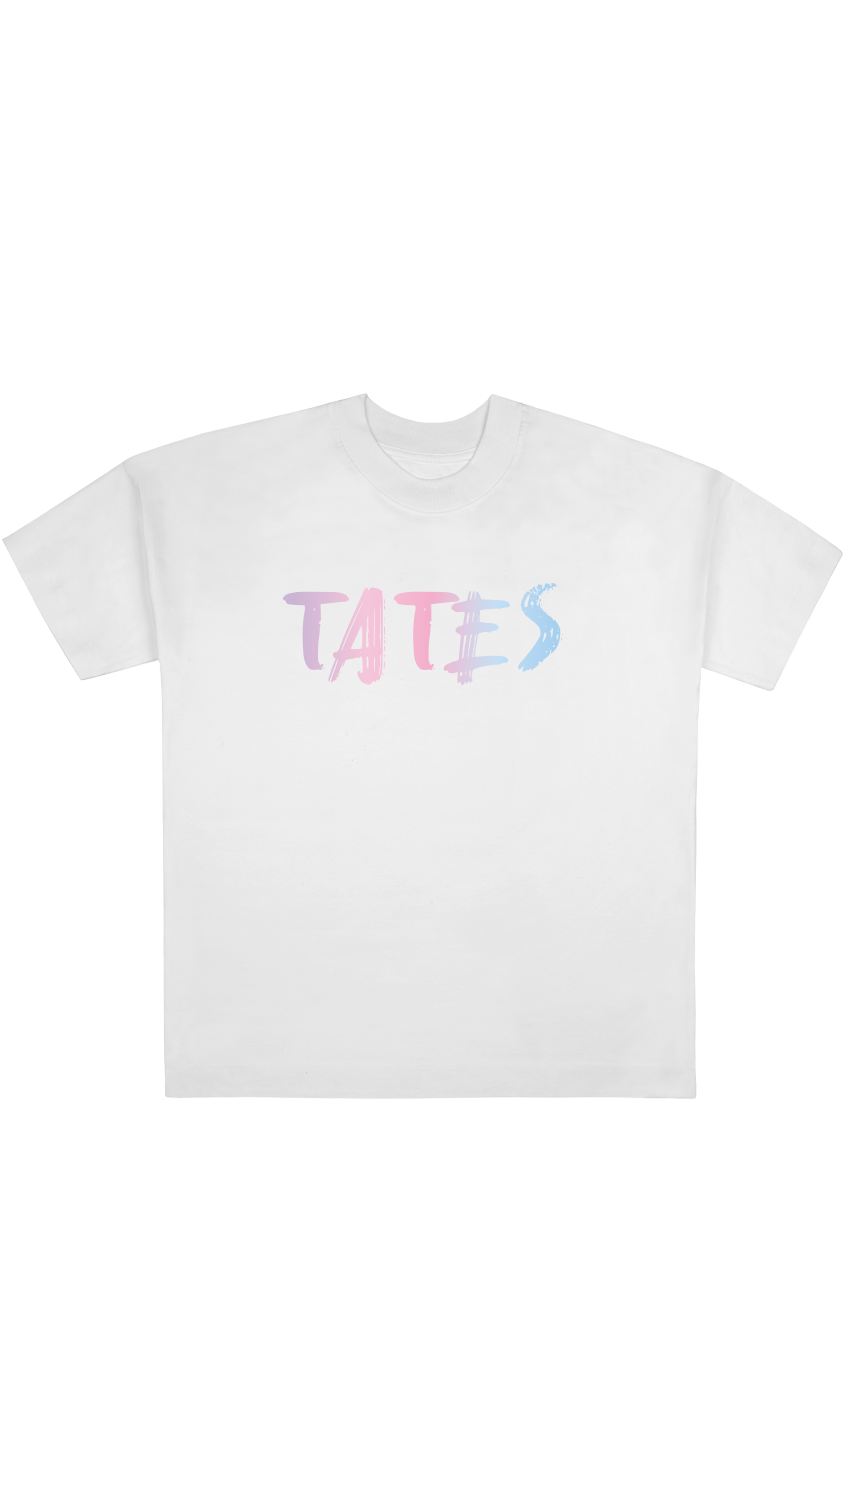 Tates Shirt rosa/blau